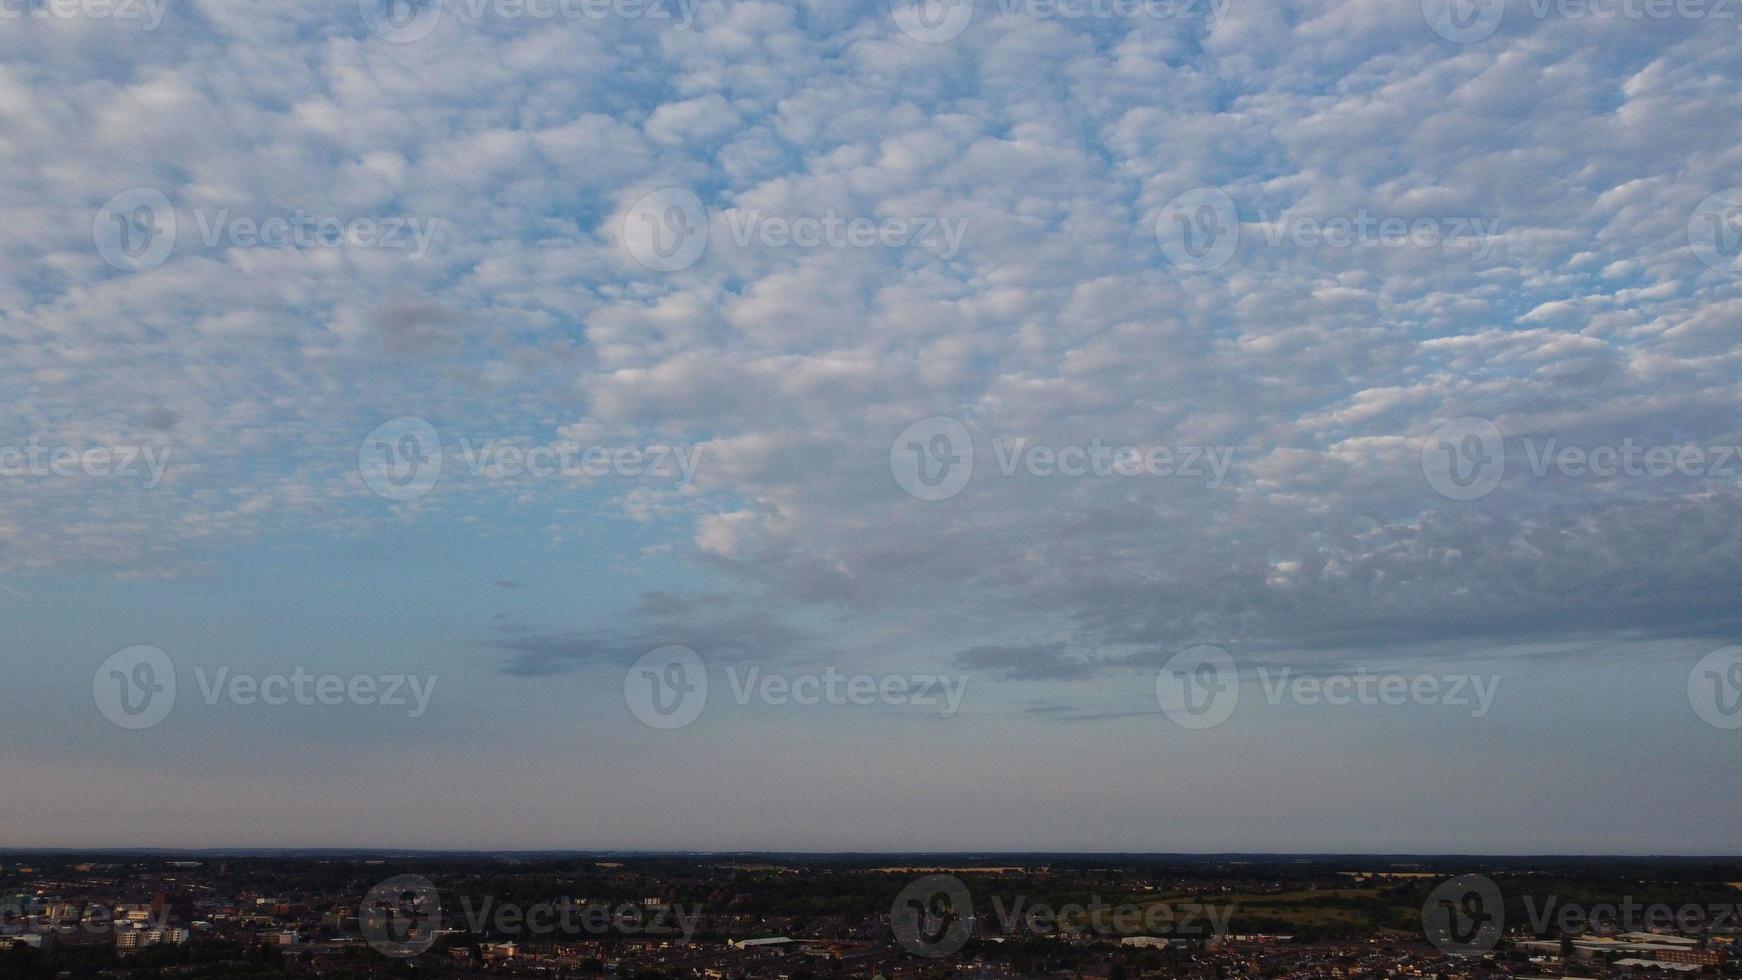 el hermoso amanecer y las nubes coloridas, la vista aérea y la vista de ángulo alto tomadas por drones en Inglaterra, Reino Unido foto